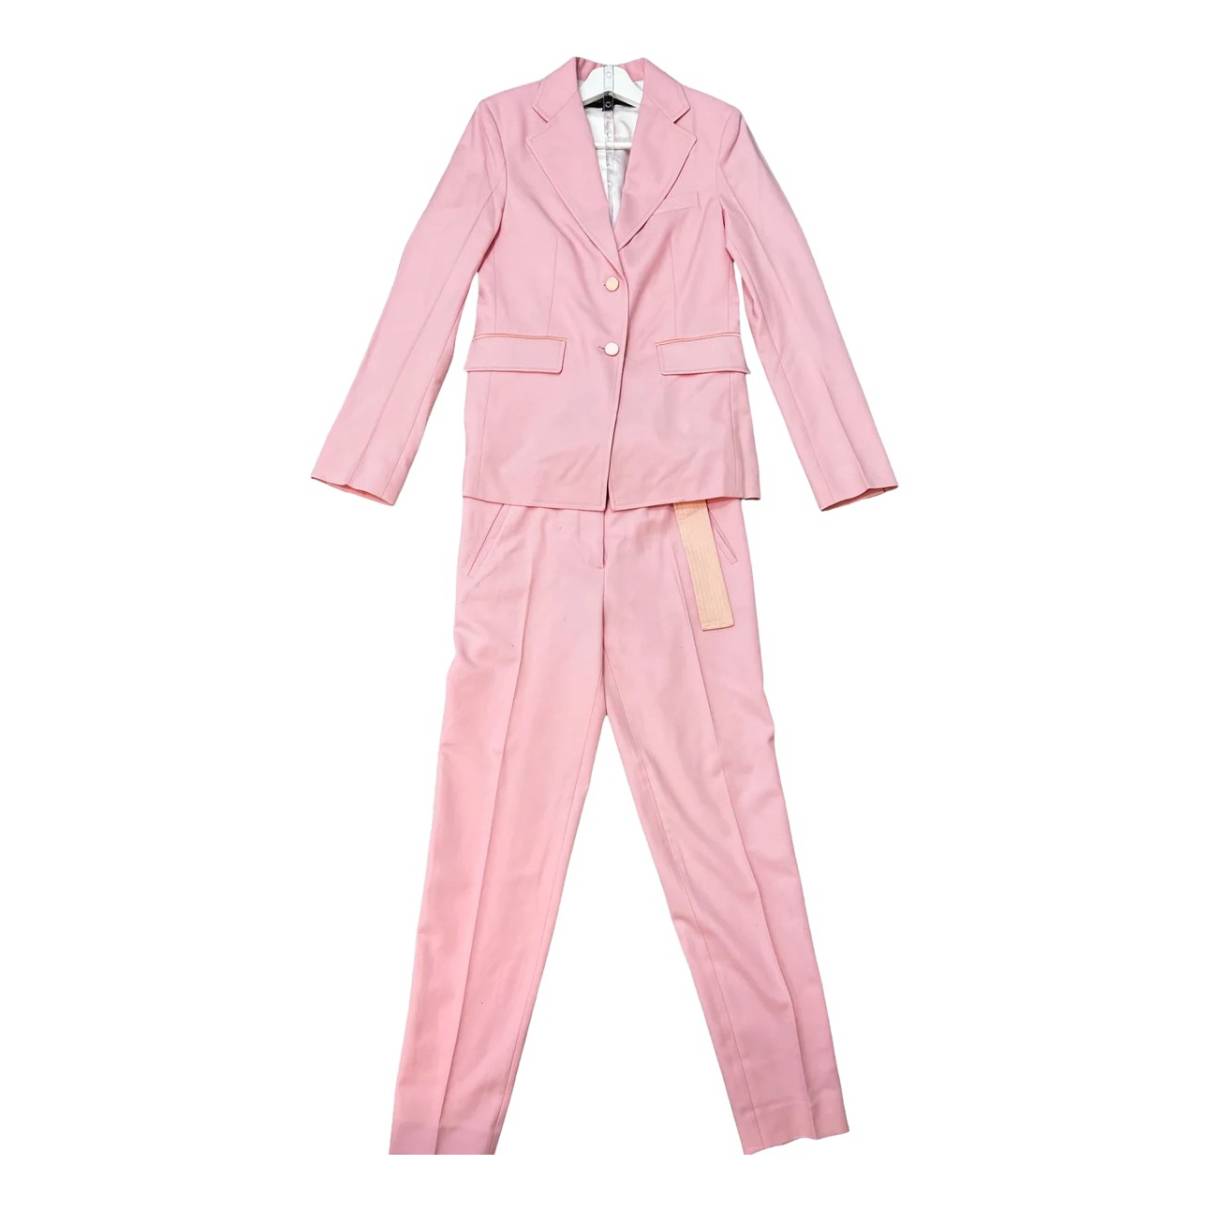 vuitton pajamas pink